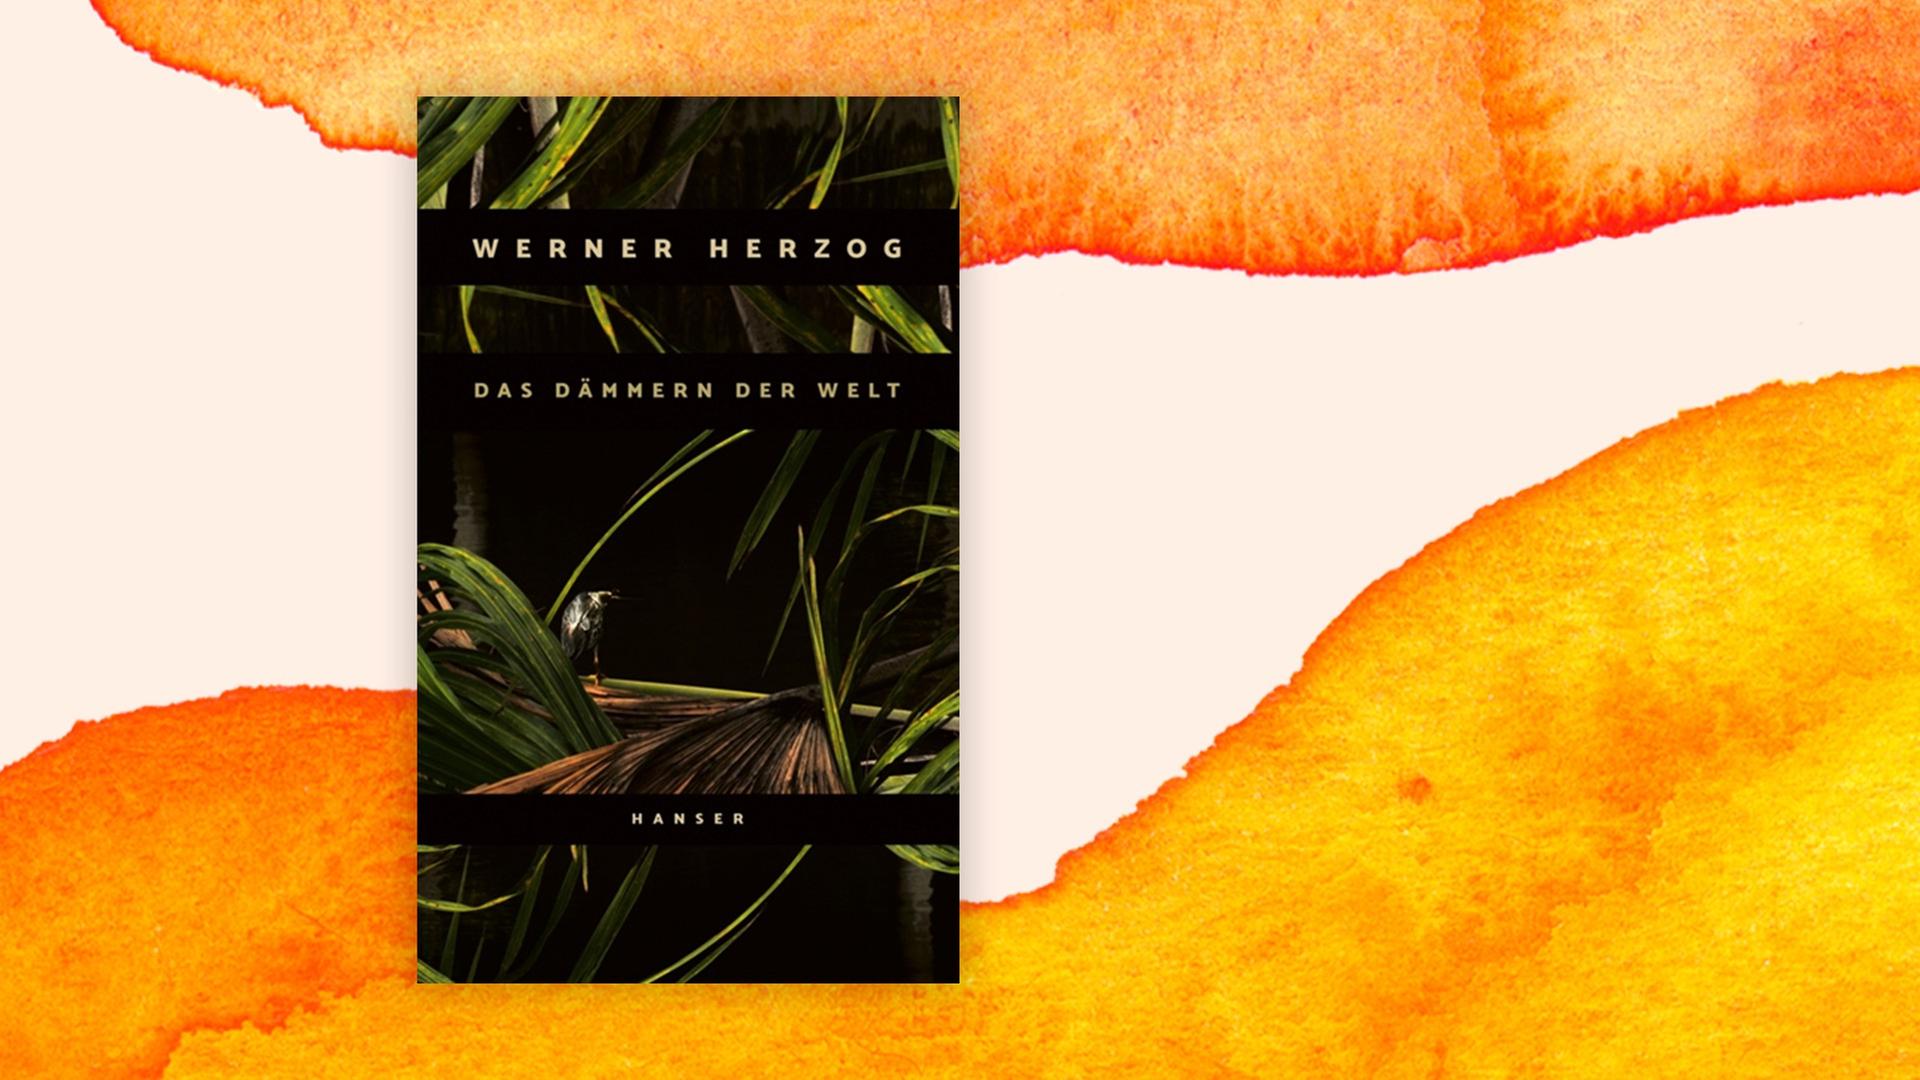 Cover von Werner Herzogs Buch "Das Dämmern der Welt" auf orangem Hintergrund